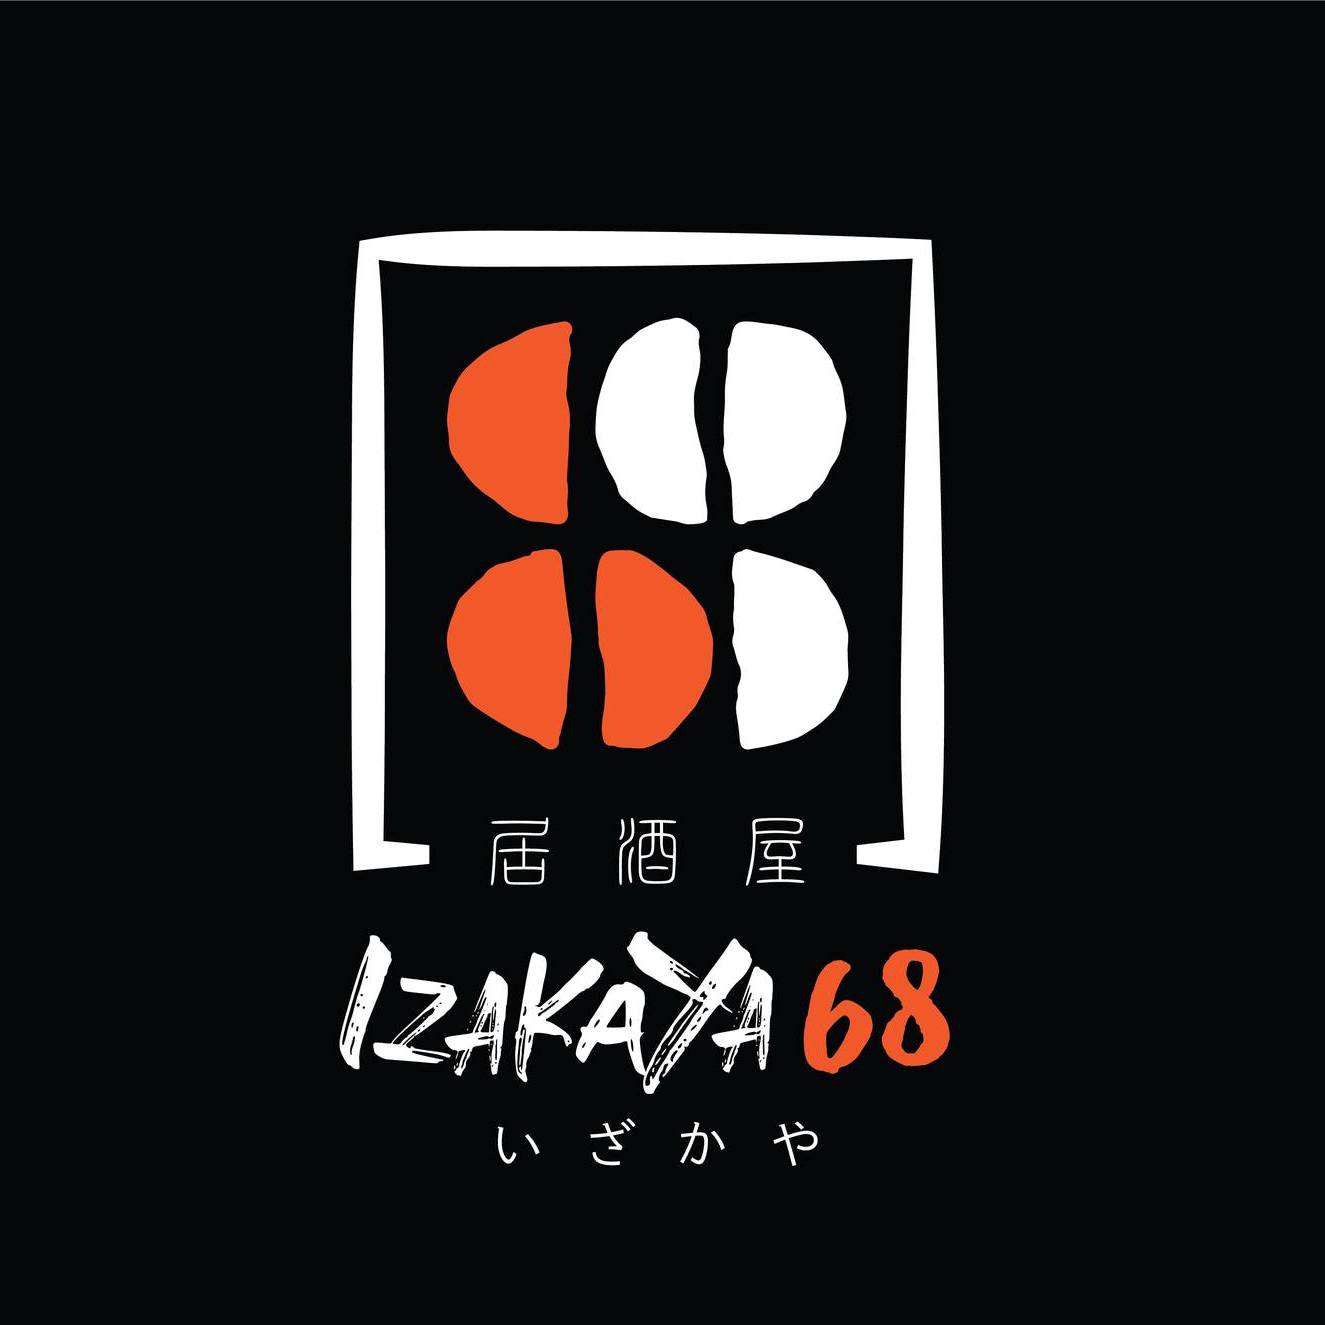 Izakaya 68